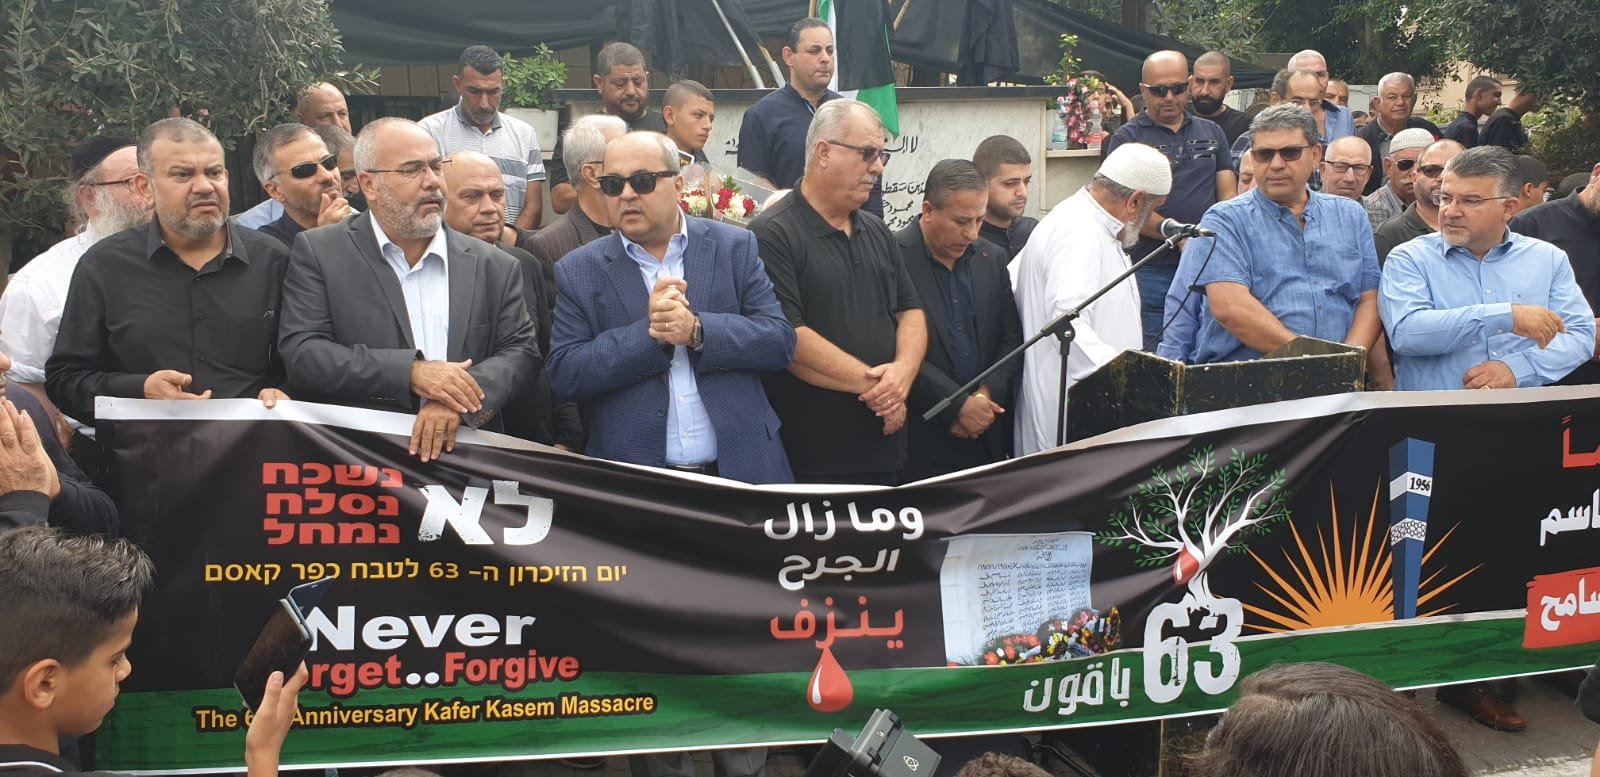 الجماهير تُحيي الذكرى الـ 63 لمجزرة كفر قاسم، ويحملون شعارات منددة ضد العنف-0